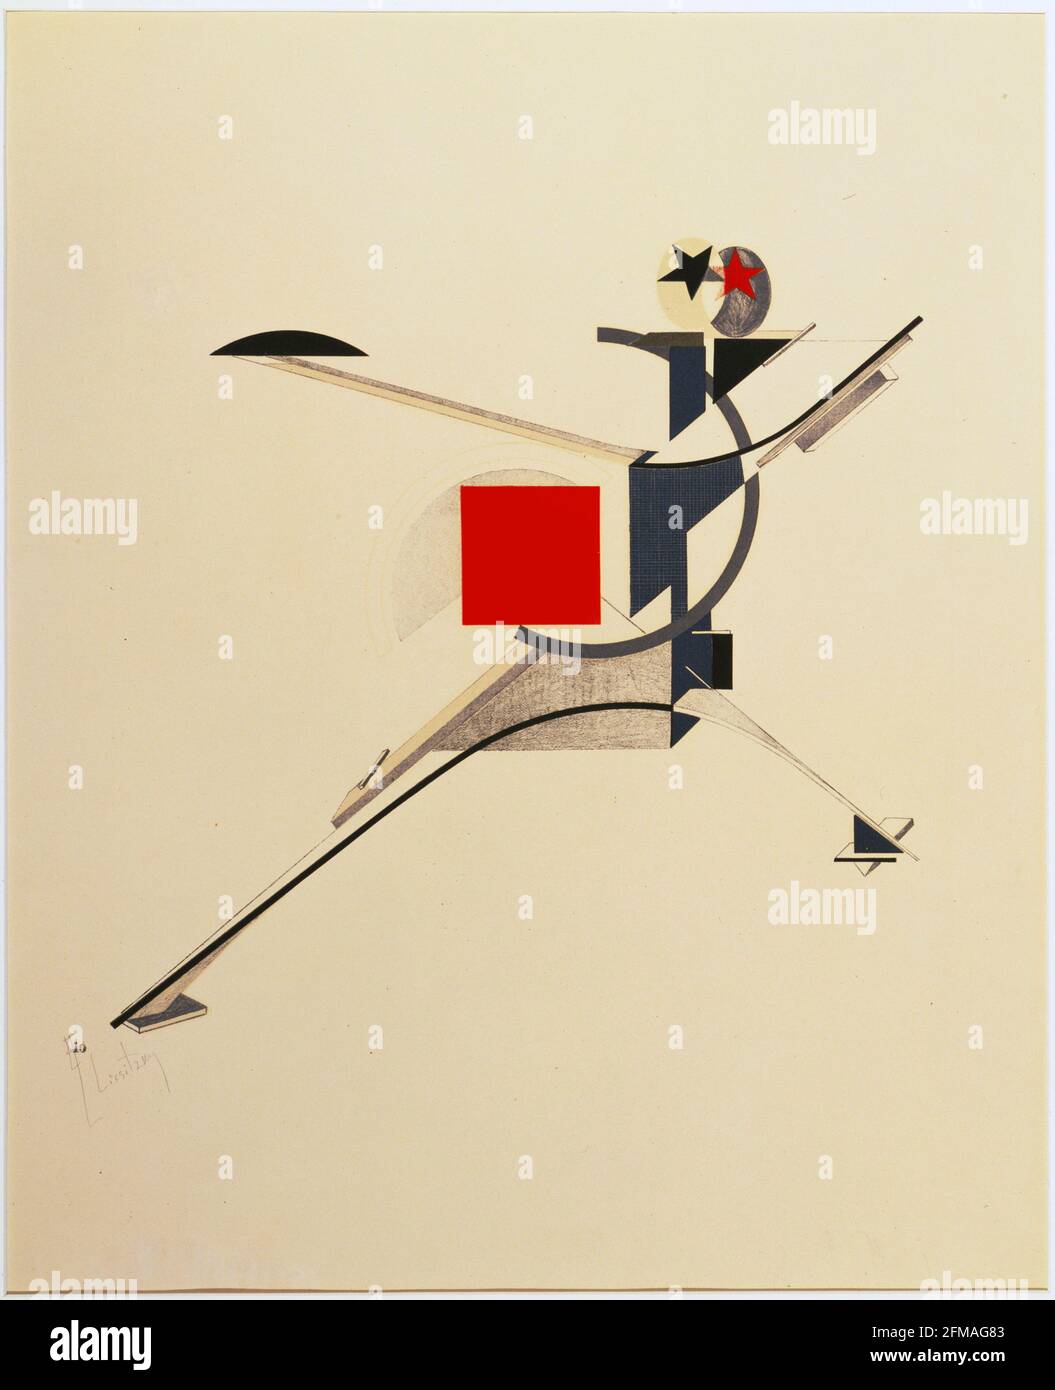 El Lissitzky. (Russian, 1890-1941). Neuer (New Man) from Figurinen, die Plastische Gestaltung der elektro-mechanischen Schau 'Sieg über die Sonne' Stock Photo